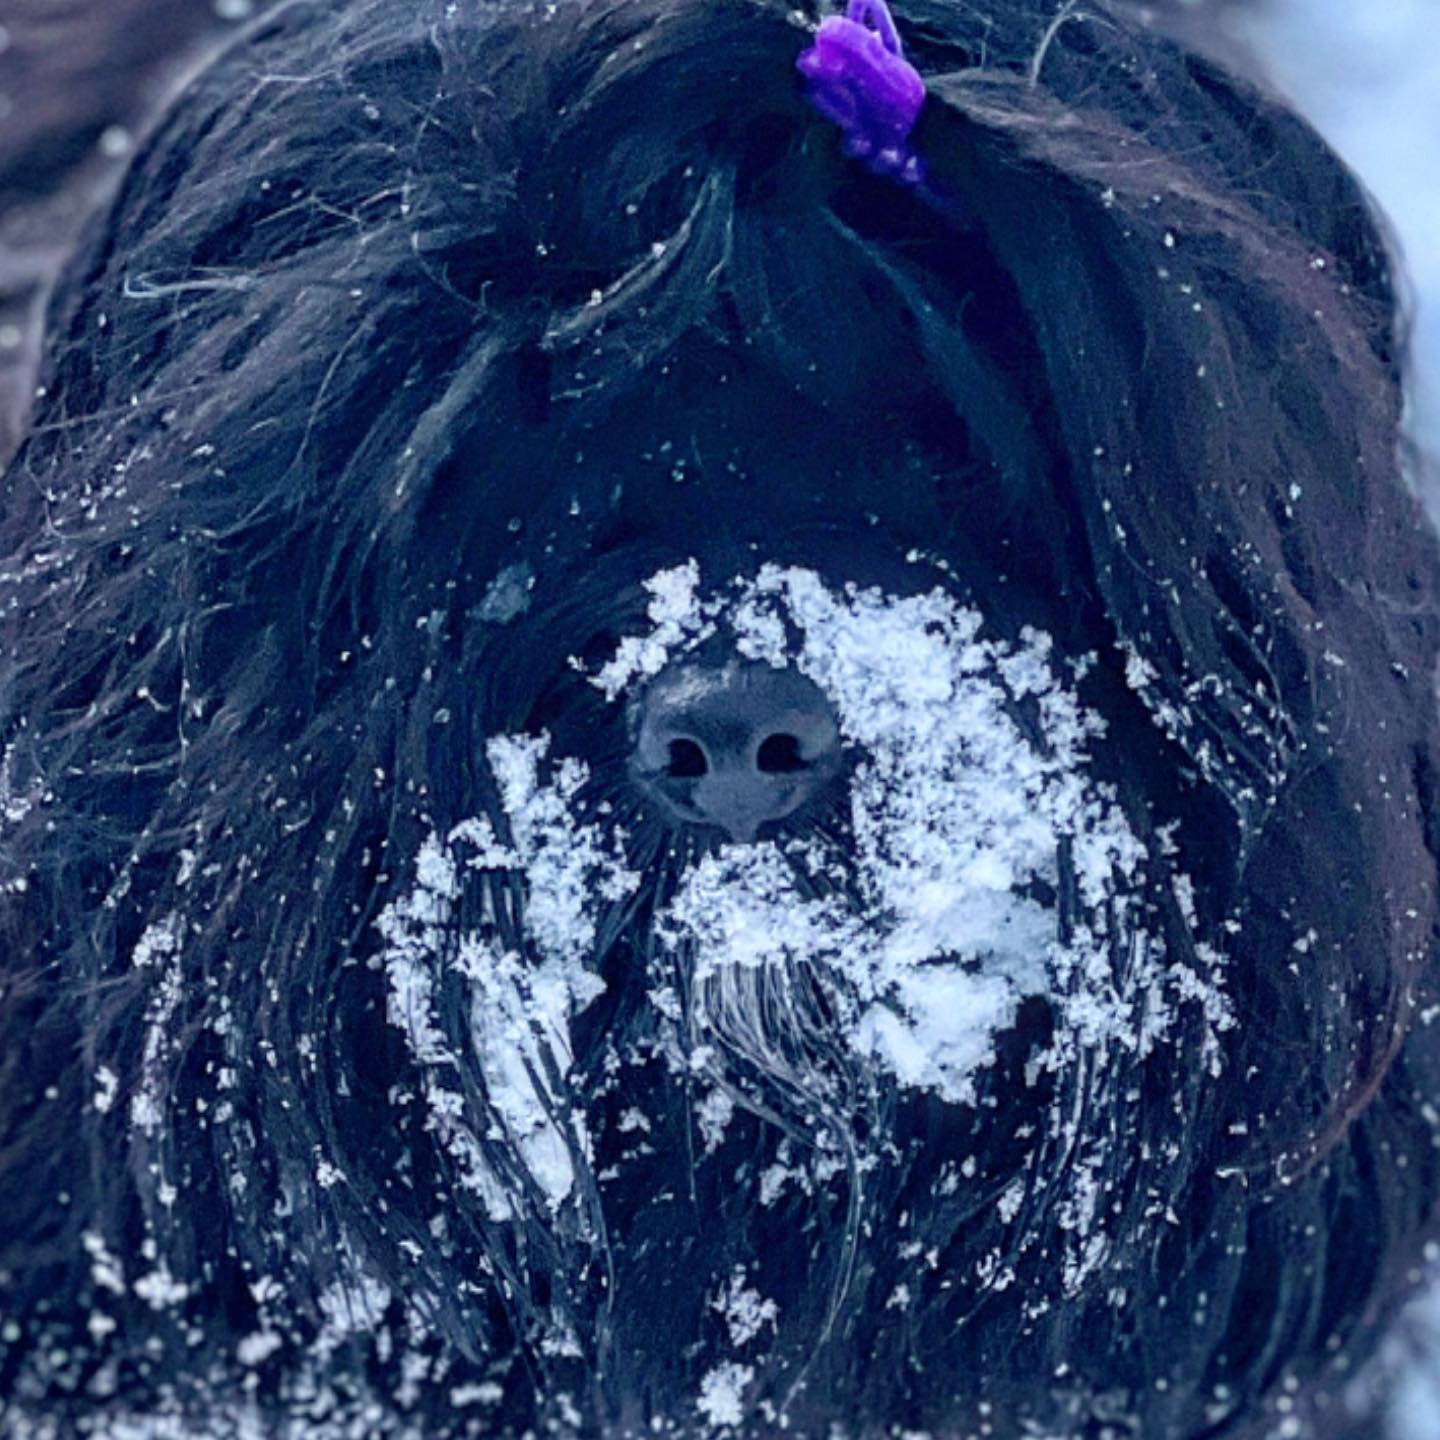 black shaggy dog with snow on face